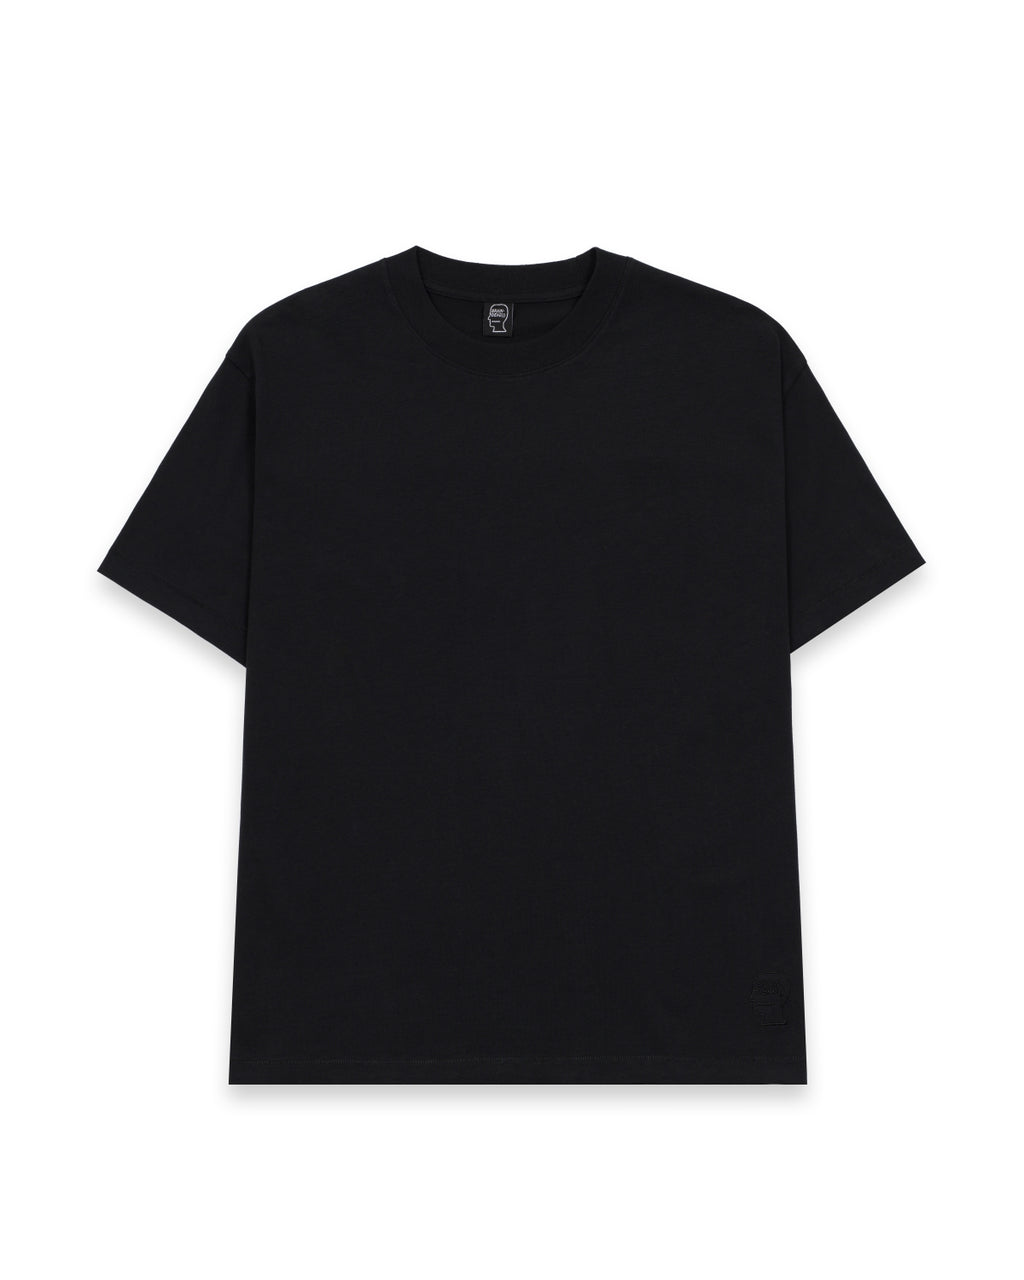 Easy Shirt - Black